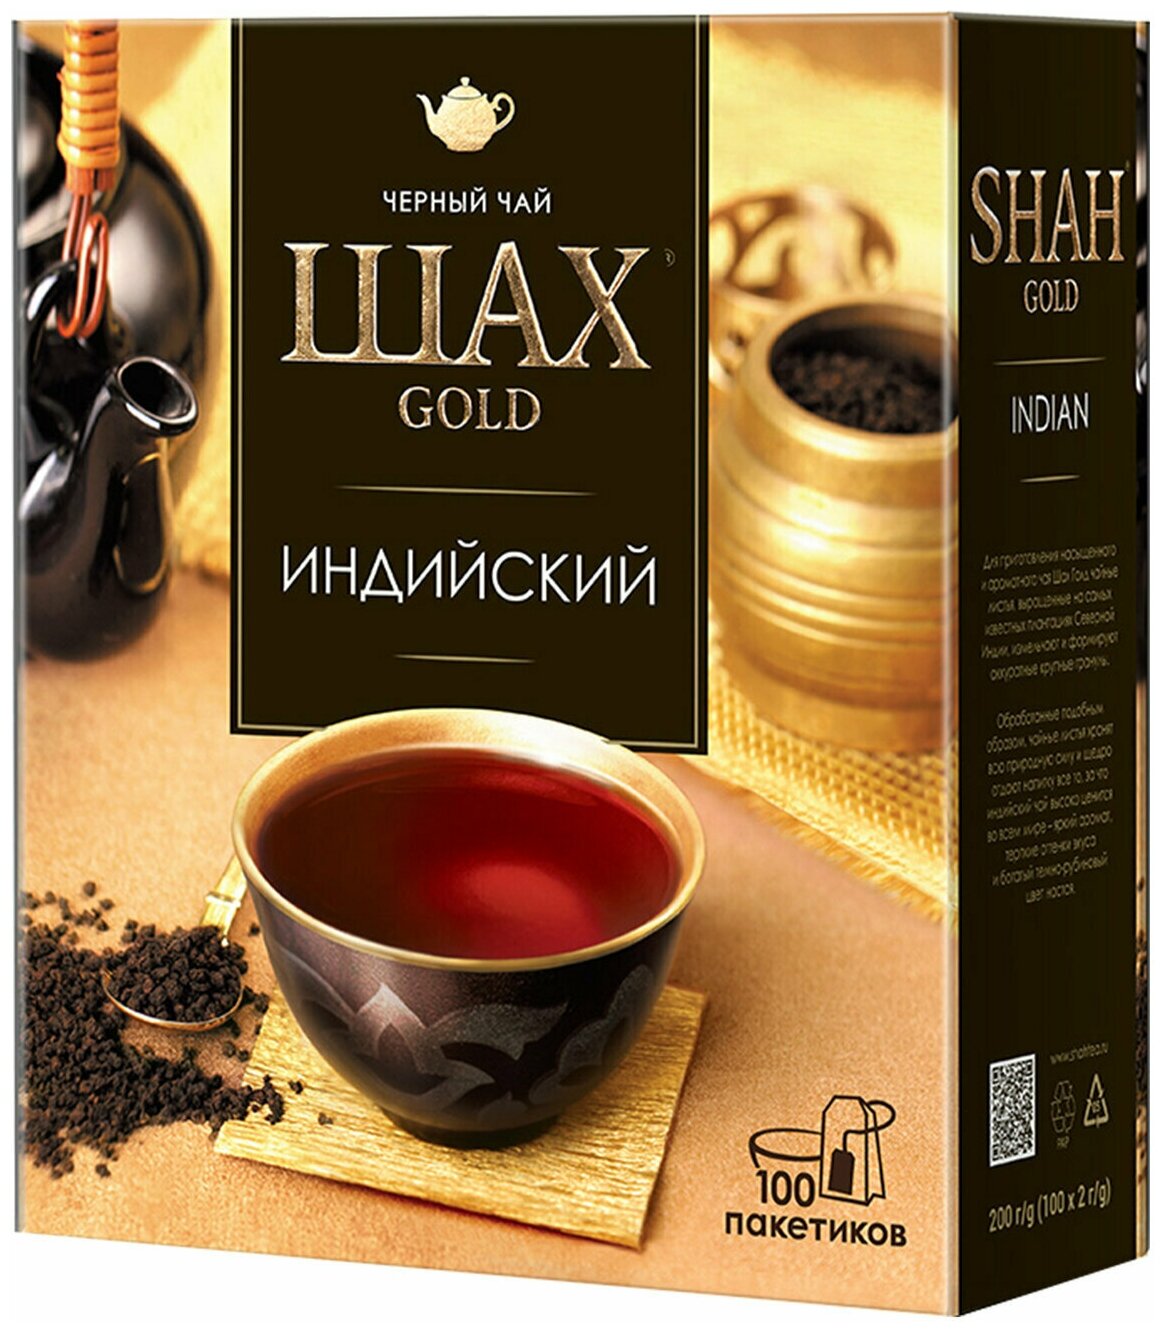 Комплект 2 шт. Чай ШАХ Gold Индийский, черный, 100 пакетков по 2 г - фотография № 1